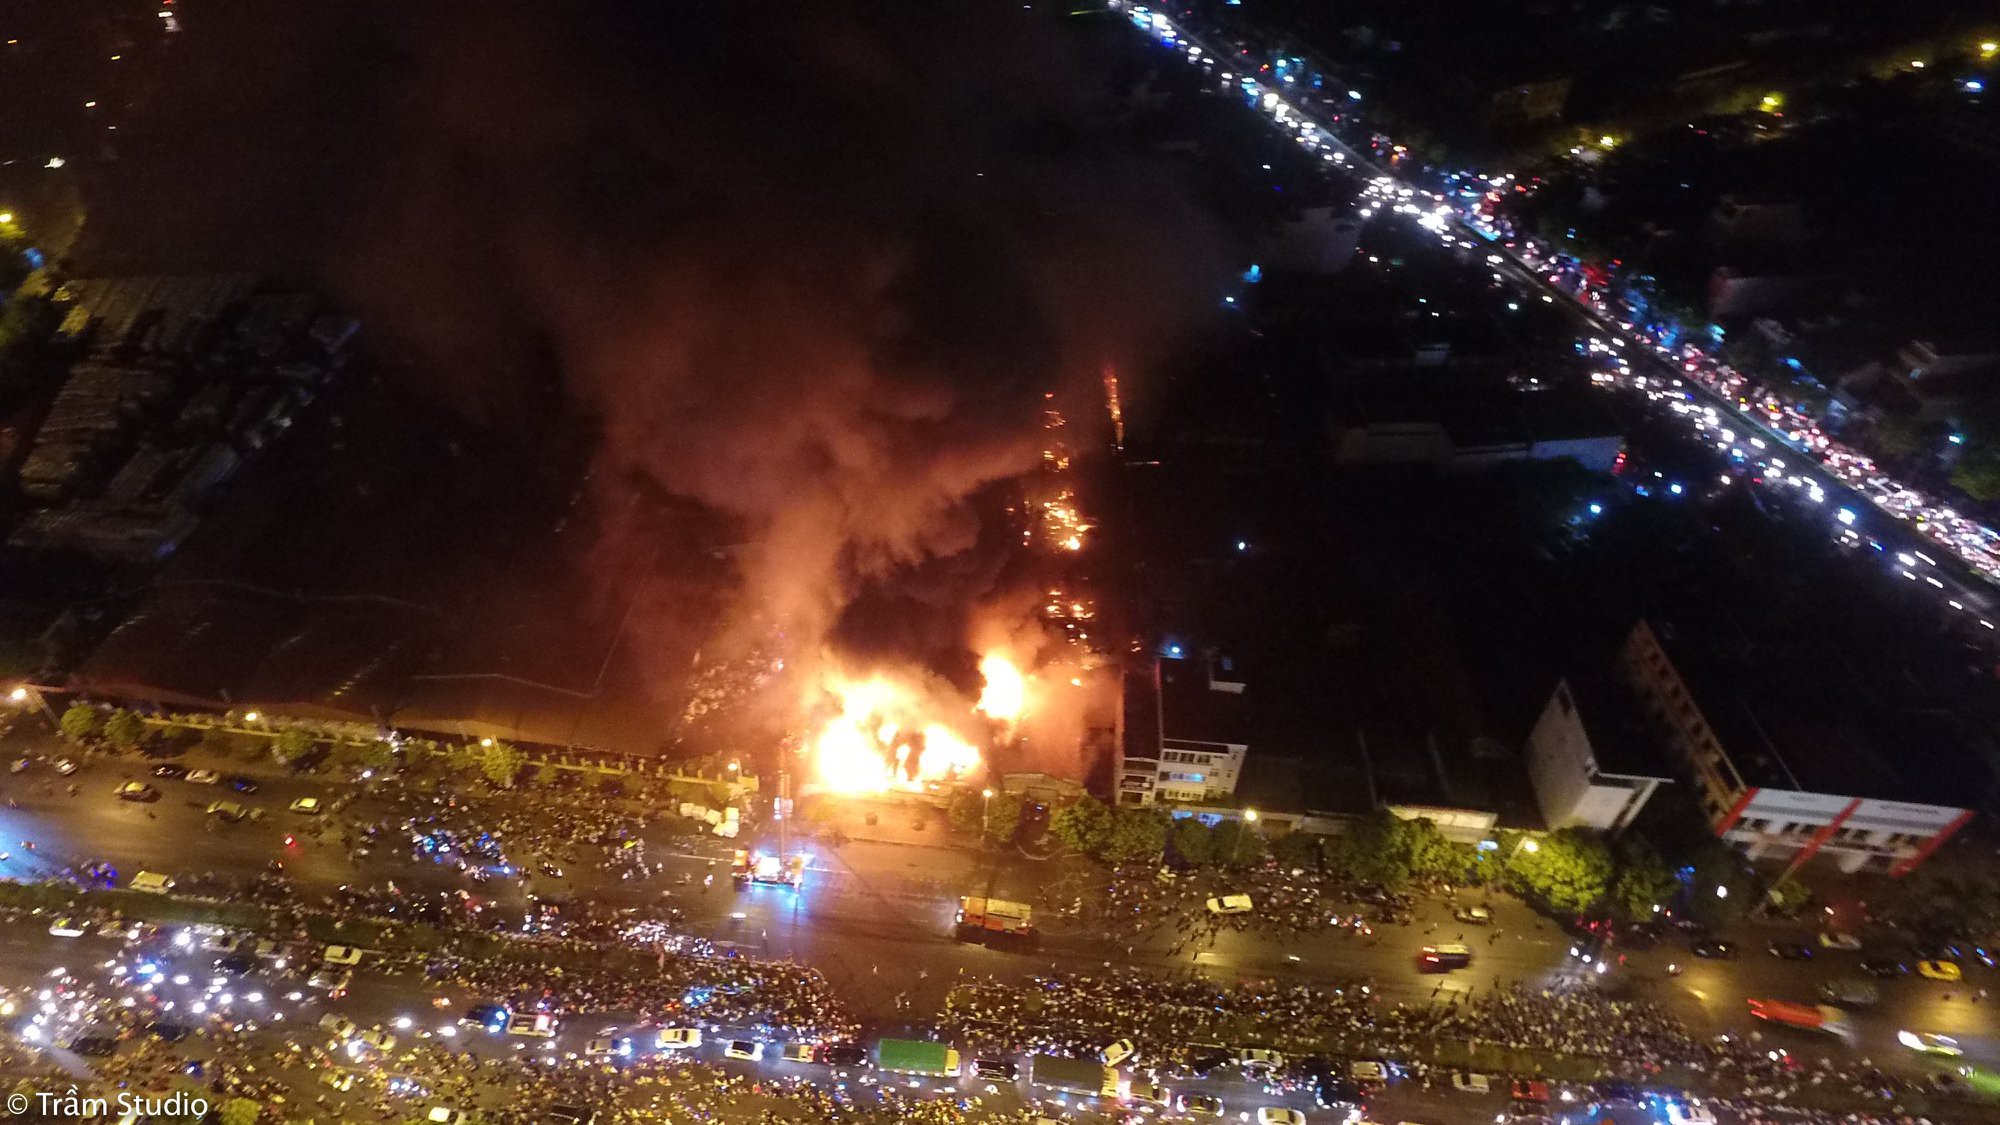 Toàn cảnh đám cháy ngùn ngụt chợ Gạo ở thành phố Hưng Yên nhìn từ trên cao - Ảnh 2.